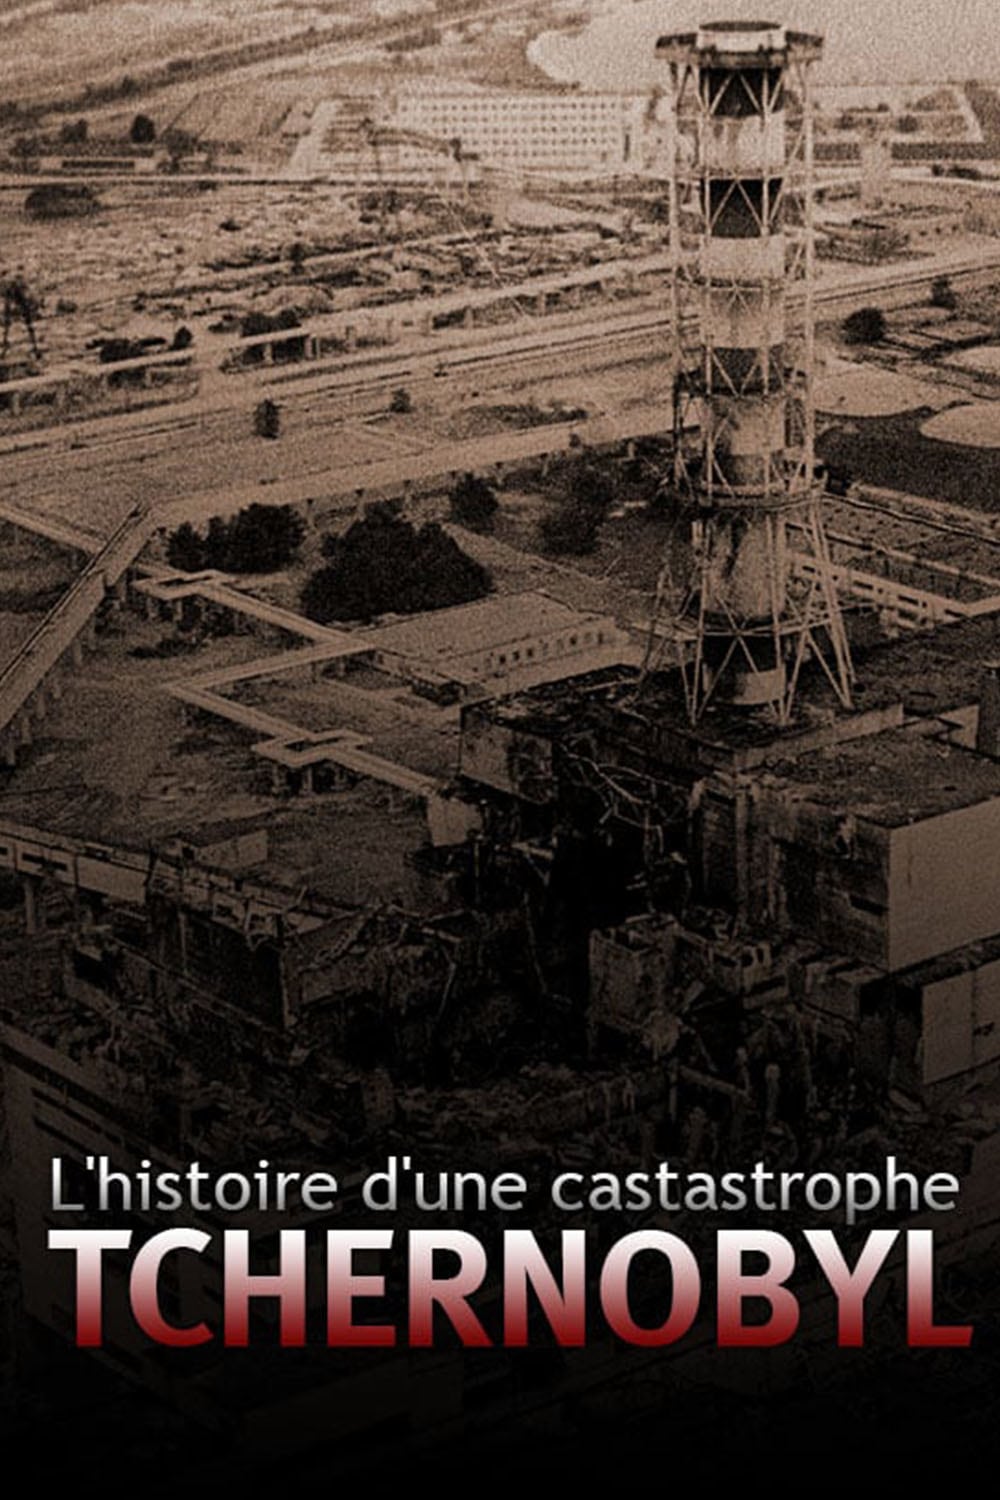 L'histoire d'une catastrophe: Tchernobyl